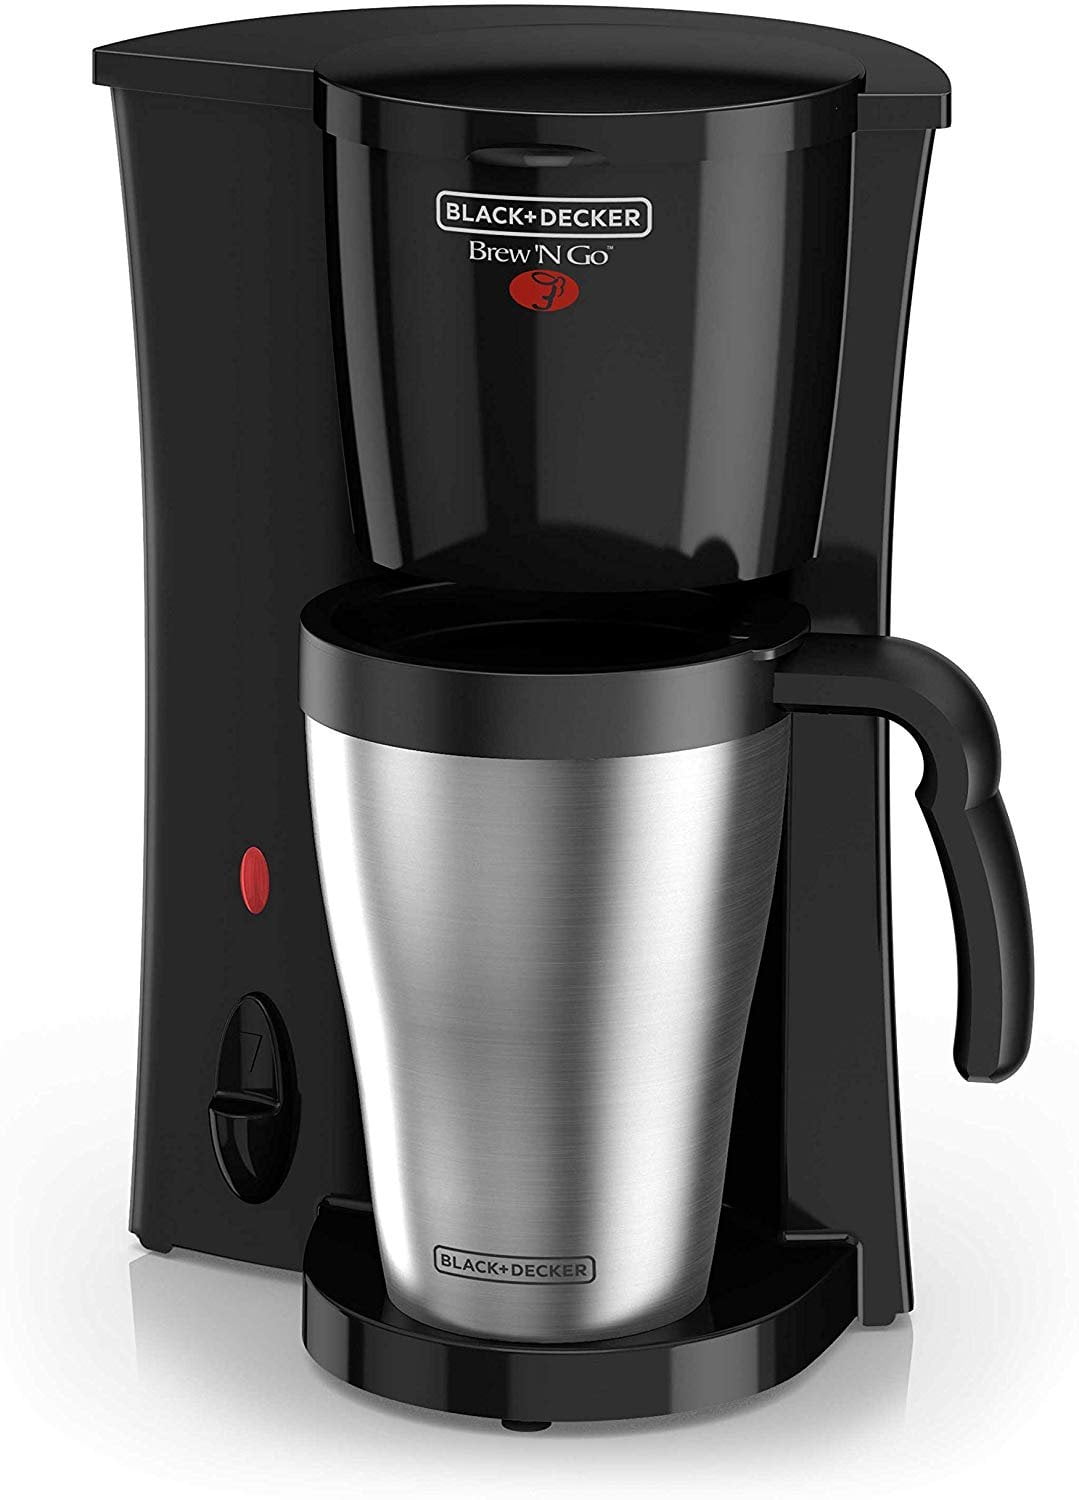 Black & Decker 4-in-1 5-Cup Blk Stainless Steel Drip Coffee Maker*Bonus*  Grinder